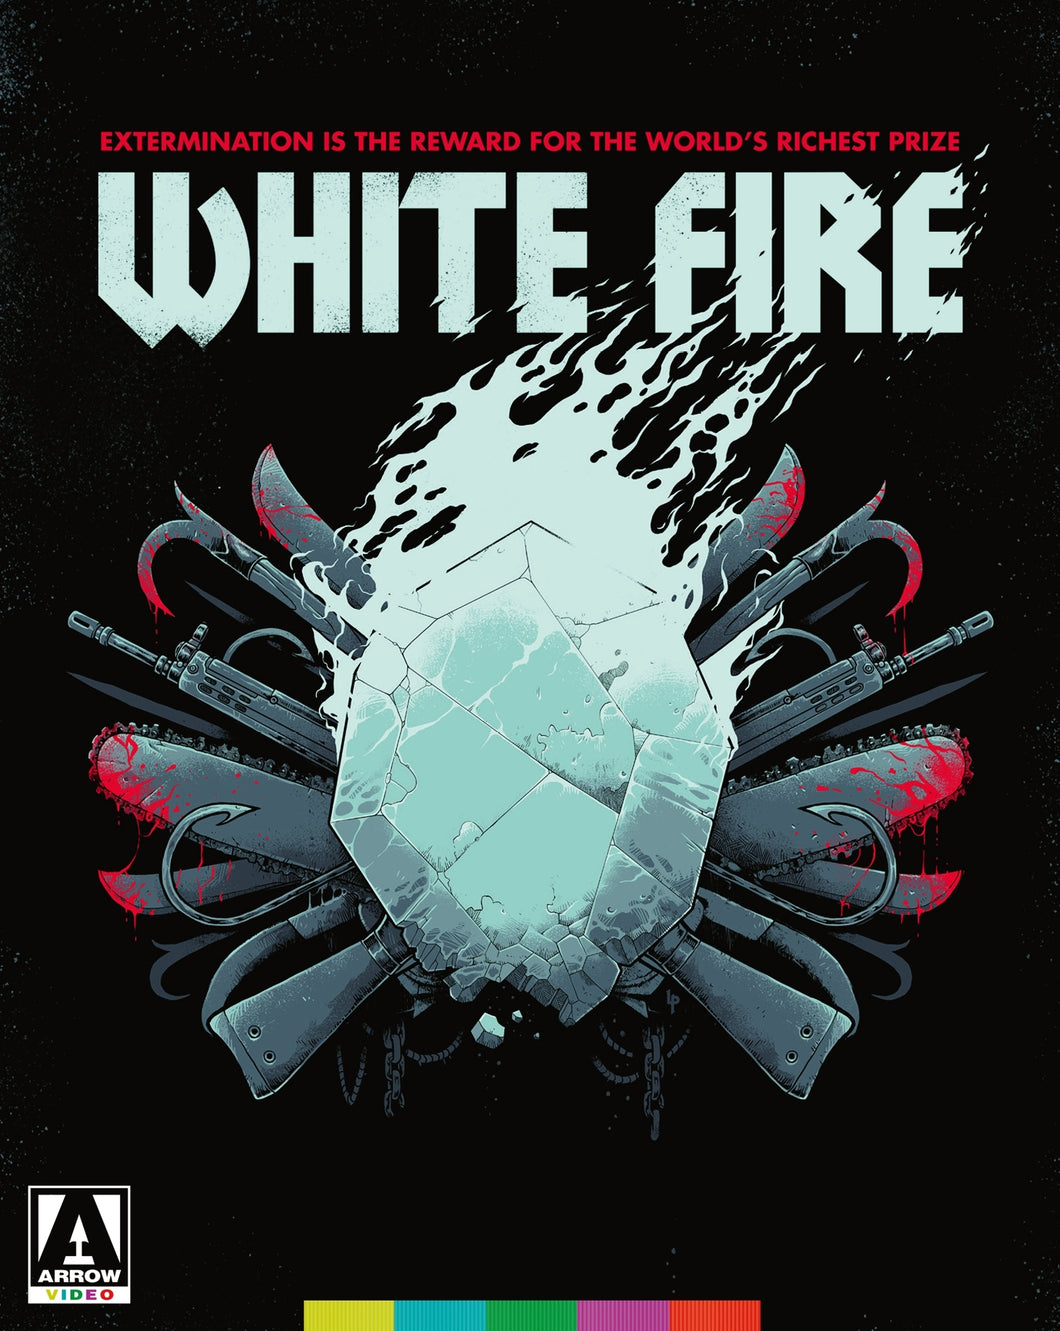 Vivre pour Survivre (White Fire) (1985) de Jean-Marie Pallardy - front cover